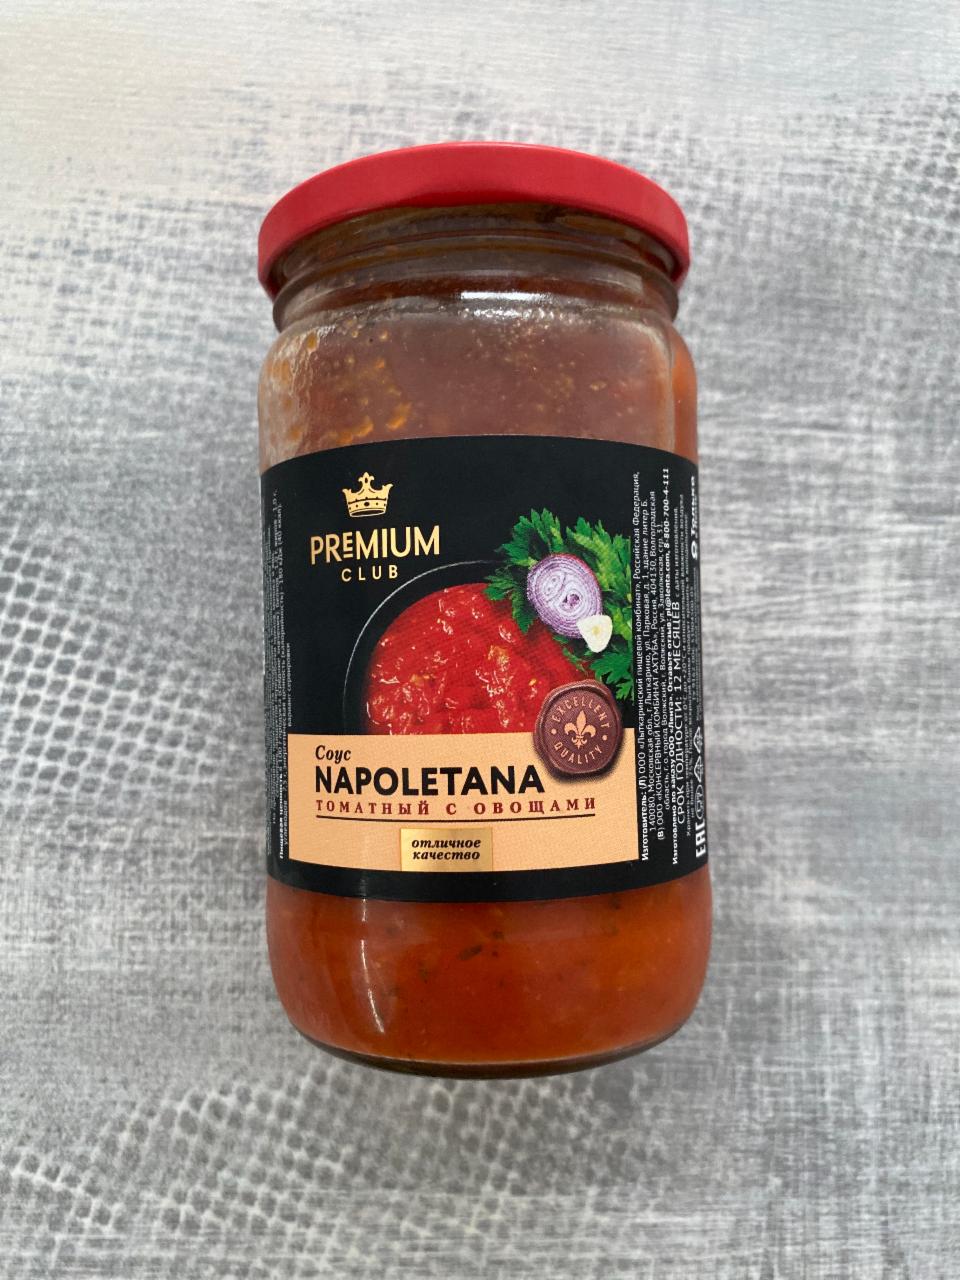 Фото - Cоус томатный с овощами Napoletana Premium Club